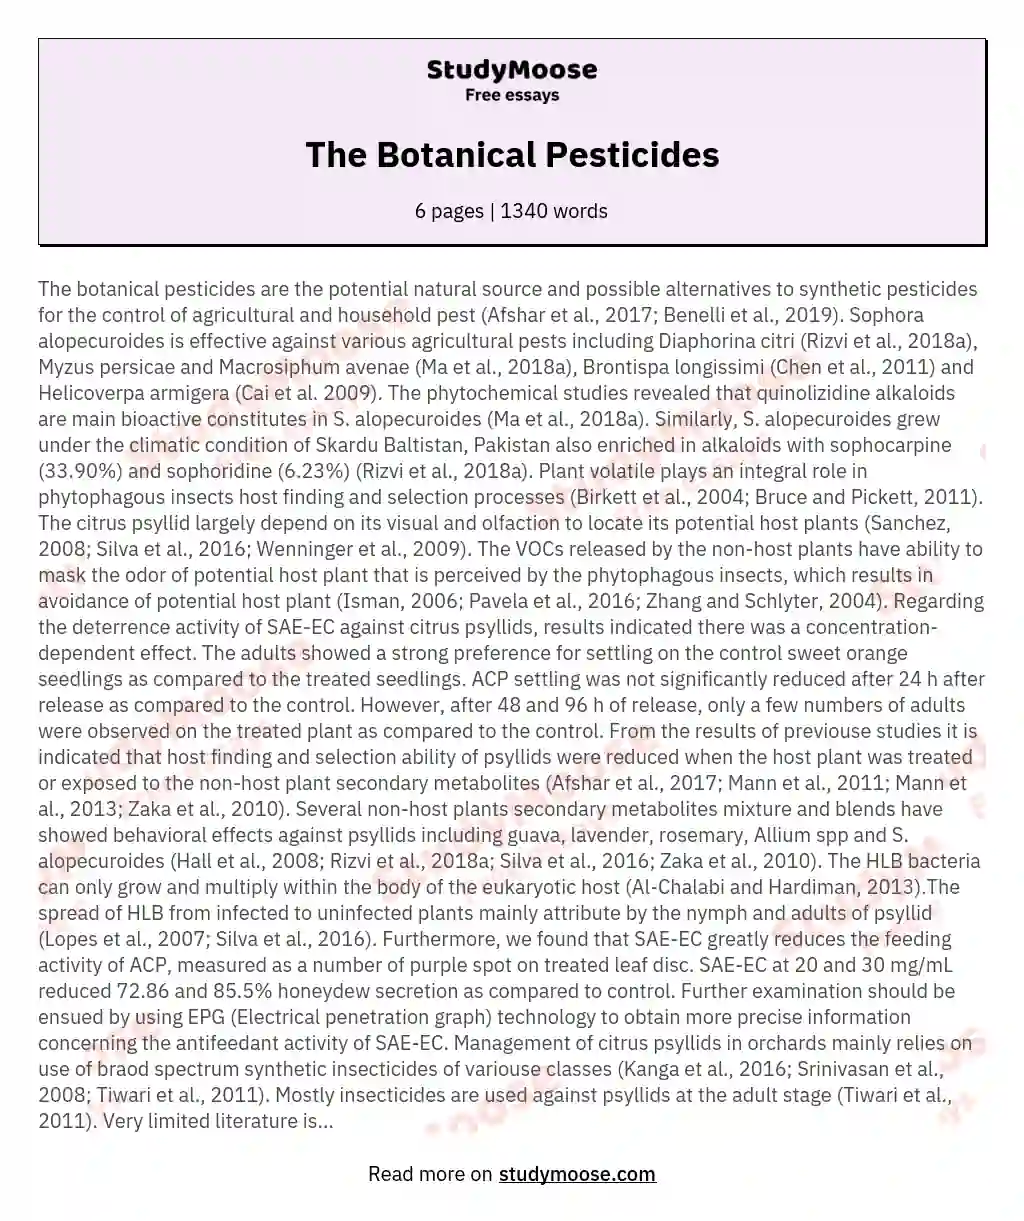 The Botanical Pesticides essay